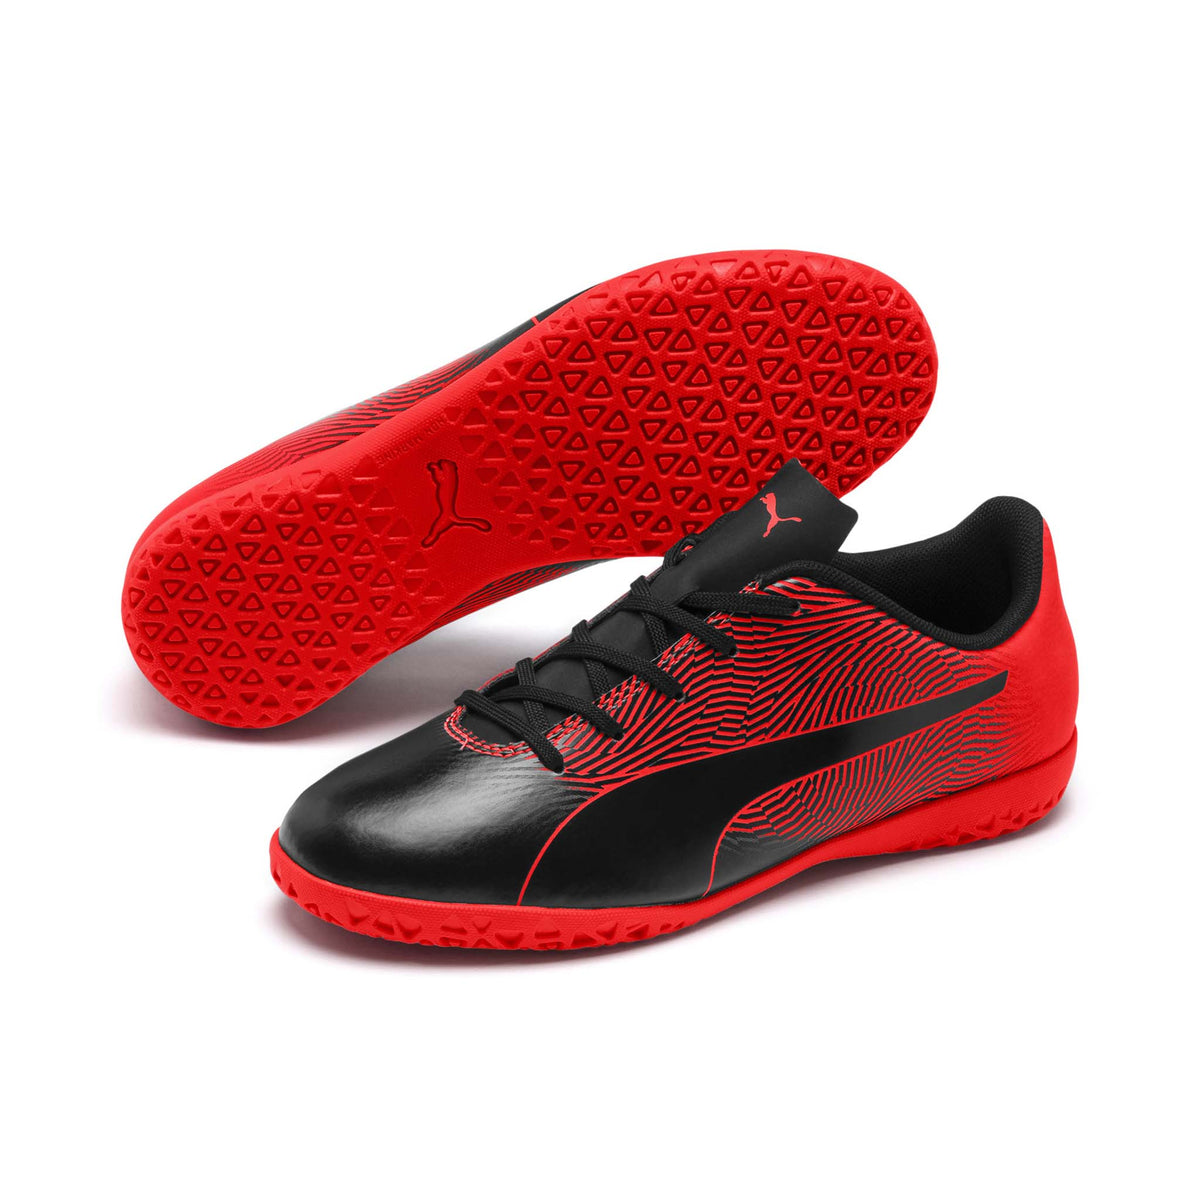 Puma Spirit II IT junior chaussure de soccer intérieur enfant rouge noir